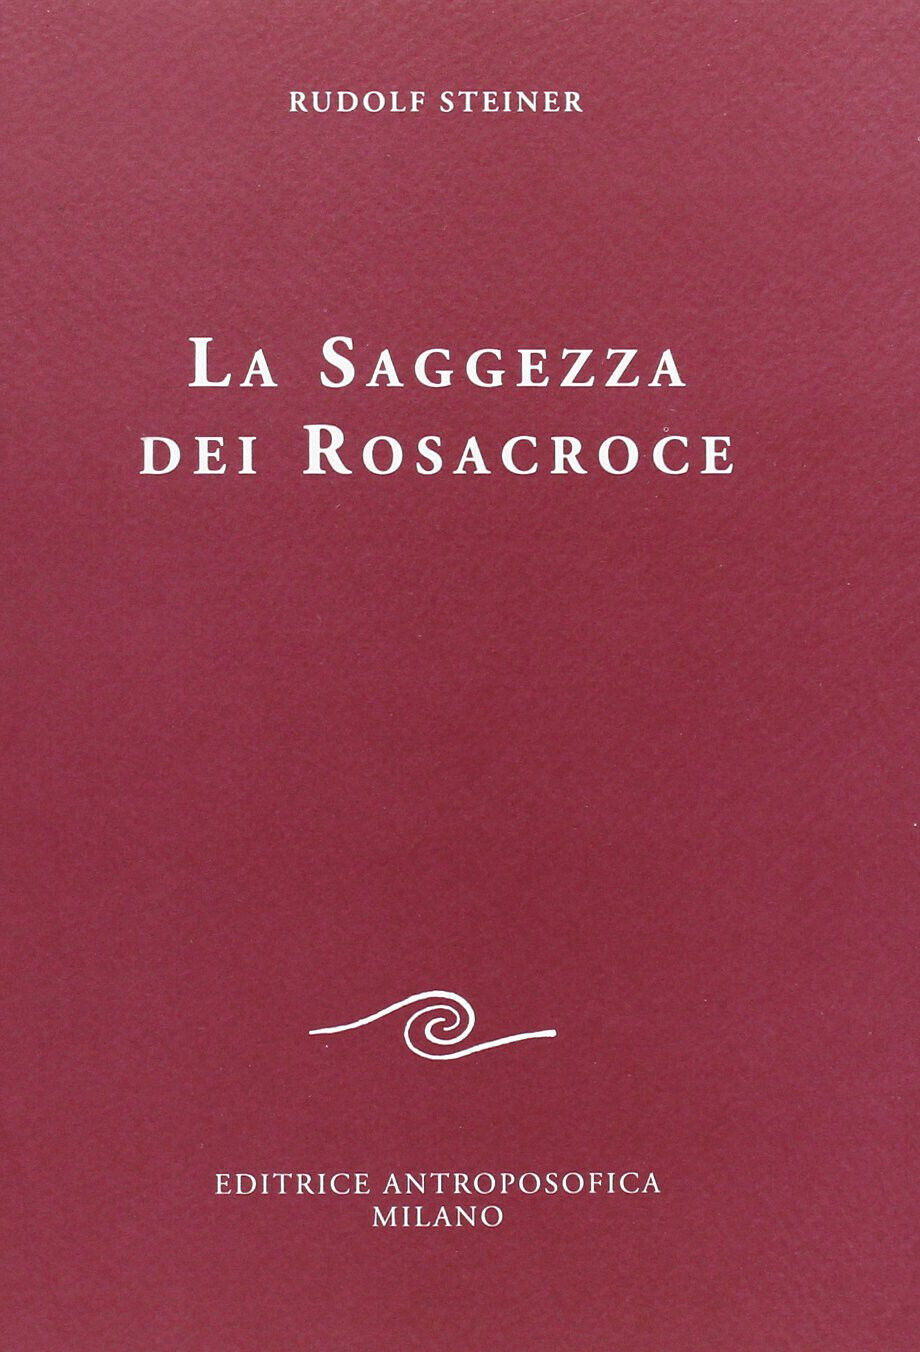 La saggezza dei rosacroce - Rudolf Steiner - Antroposofica, 2009 libro usato